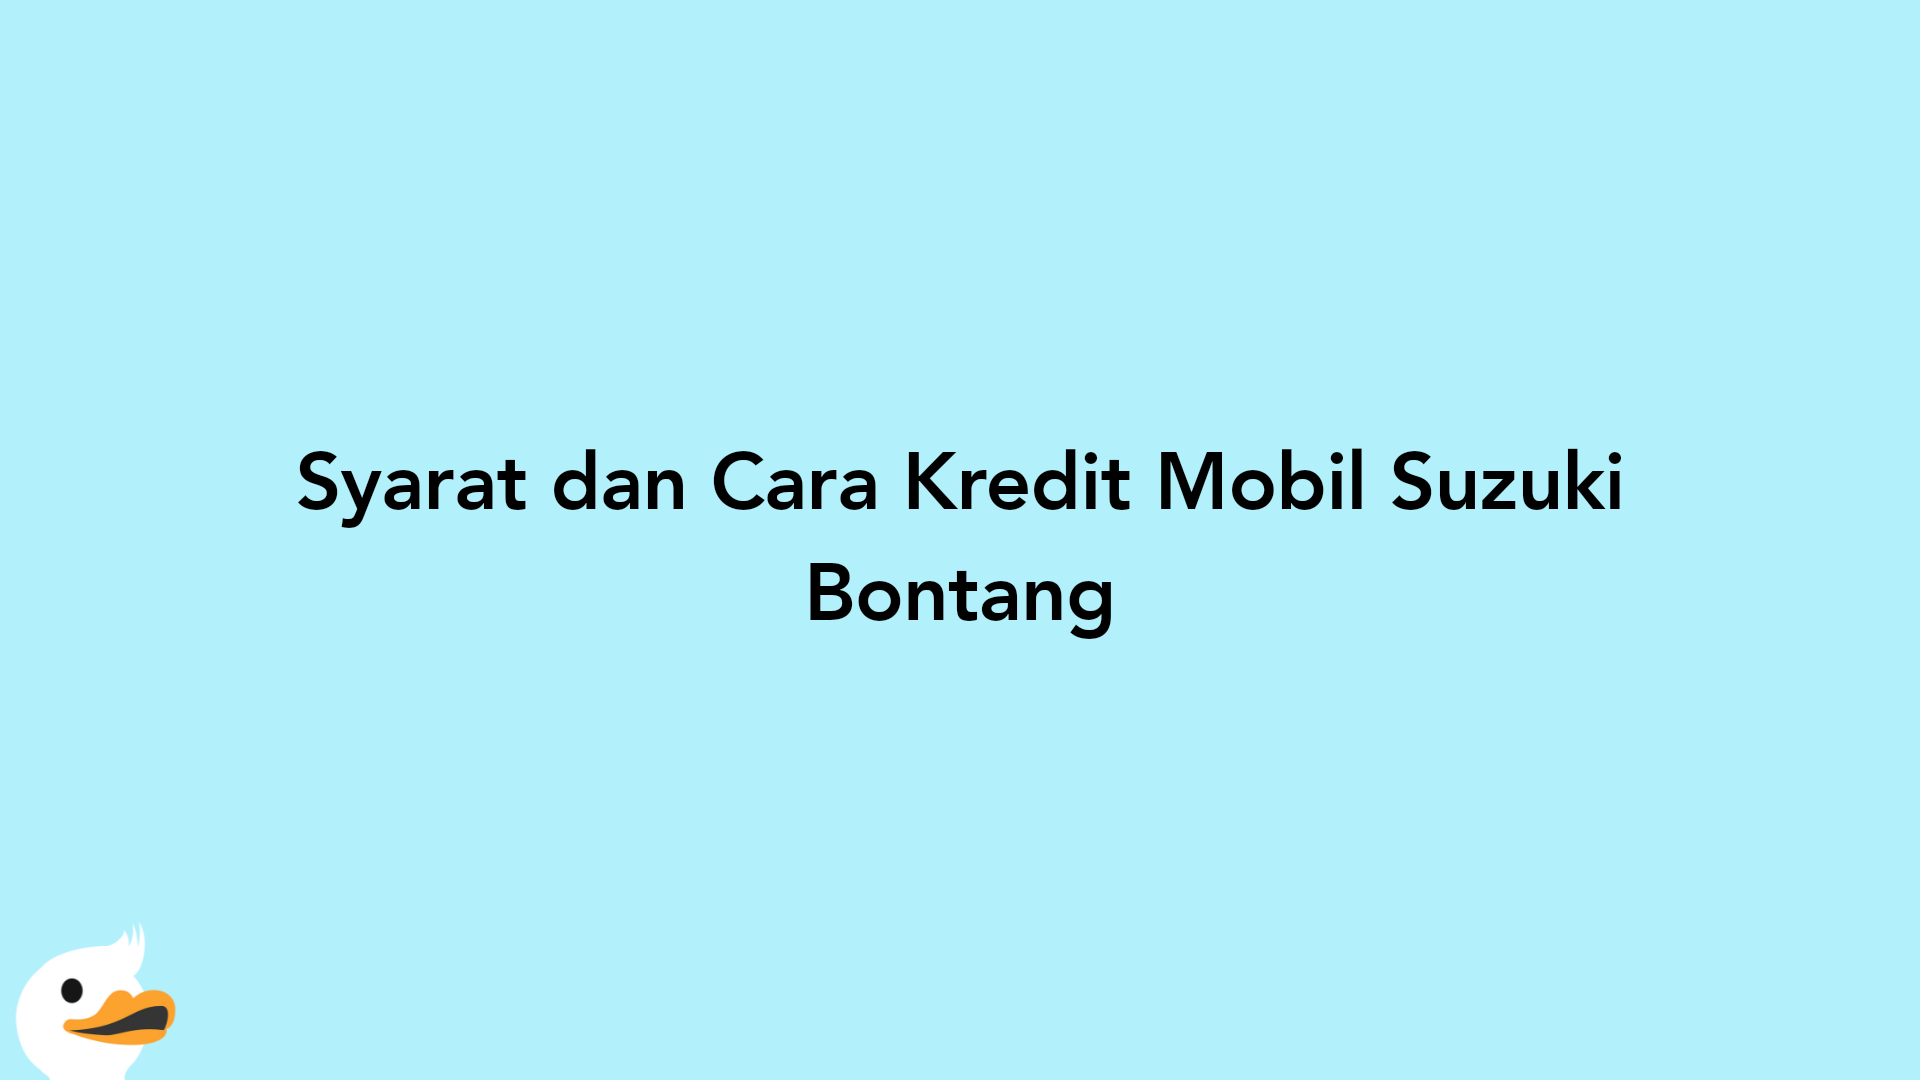 Syarat dan Cara Kredit Mobil Suzuki Bontang